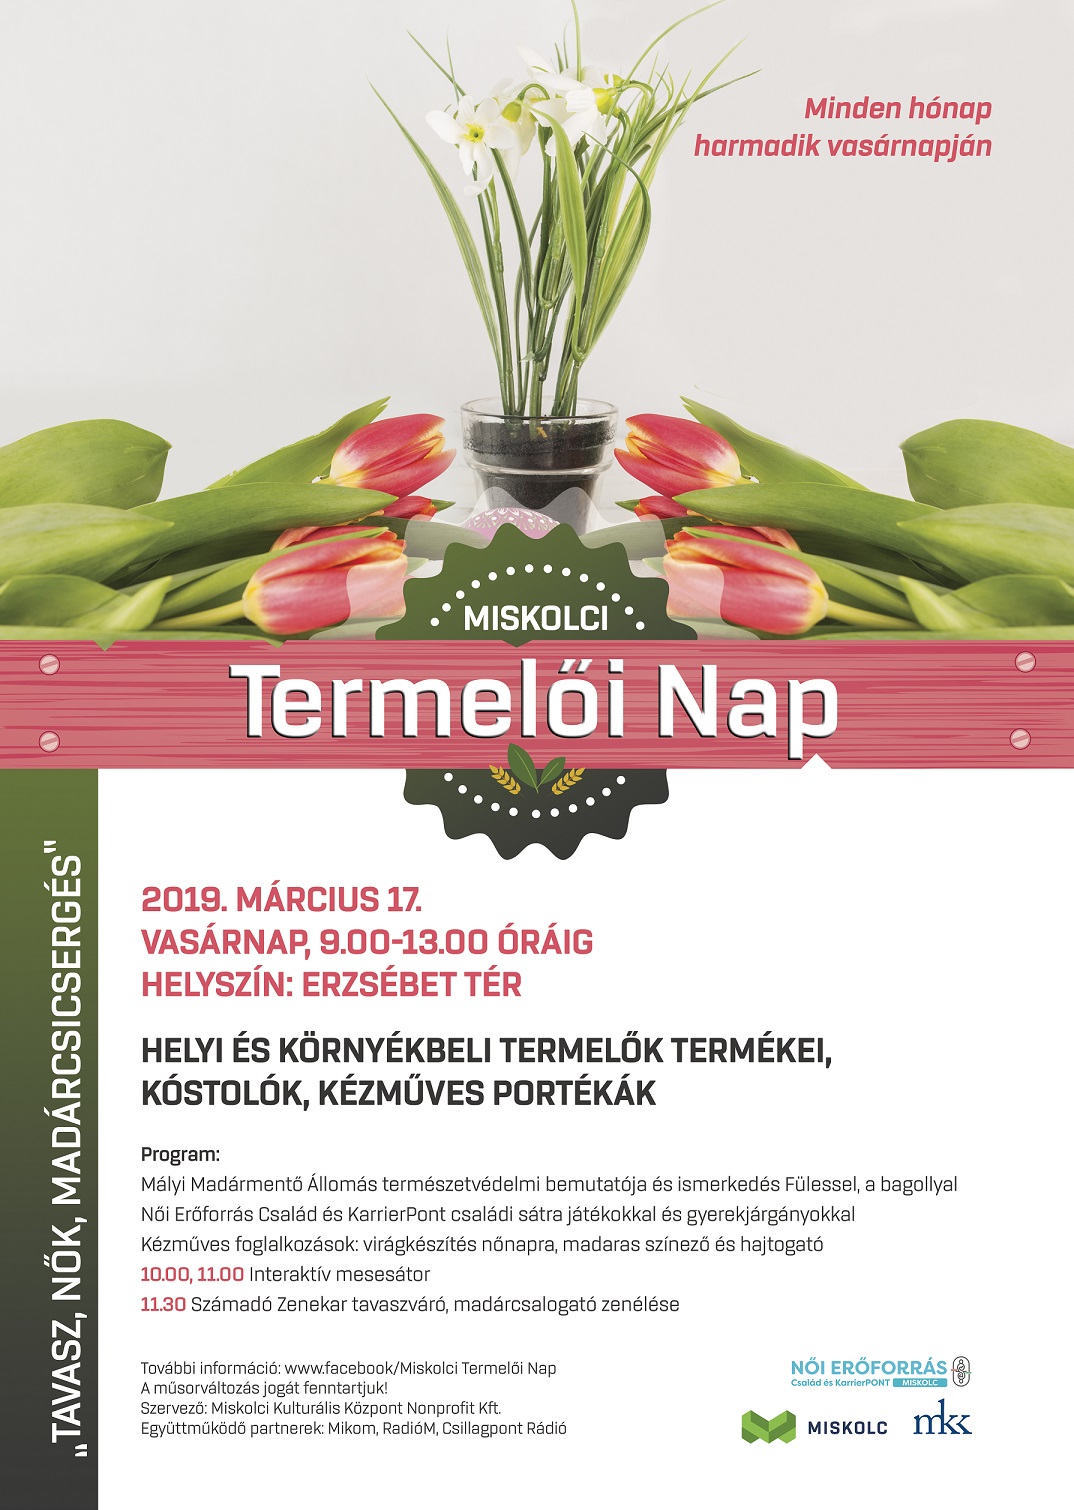 termeloi_nap_marcius_4b (1).jpg 